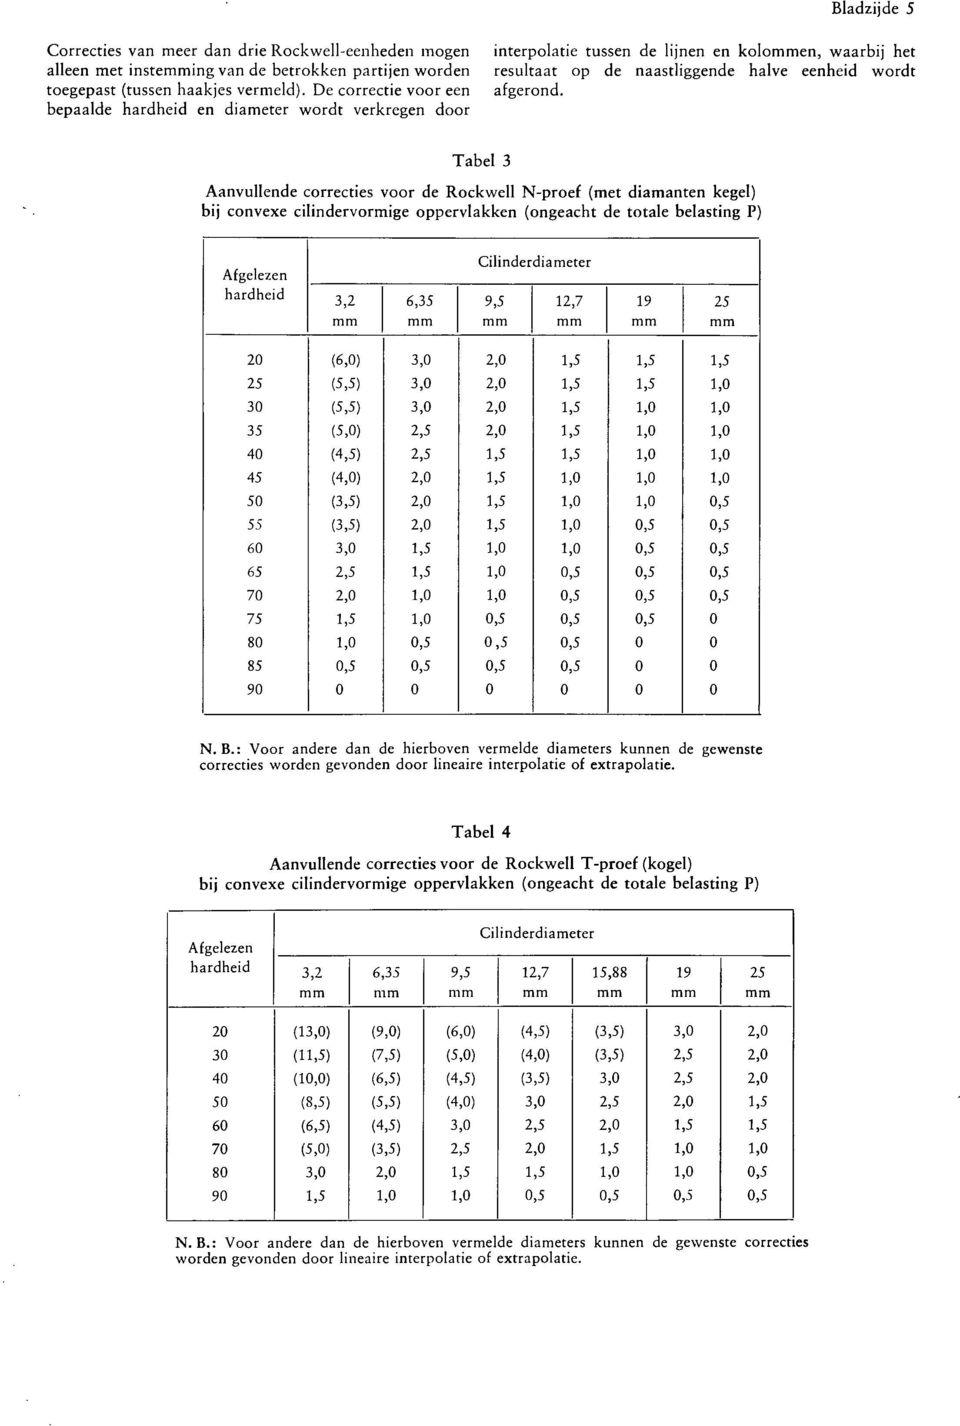 De correctie voor een afgerond, bepaalde hardheid en diameter wordt verkregen door Tabel 3 Aanvullende correcties voor de Rockwell N-proef (met diamanten kegel) bij convexe cilindervormige